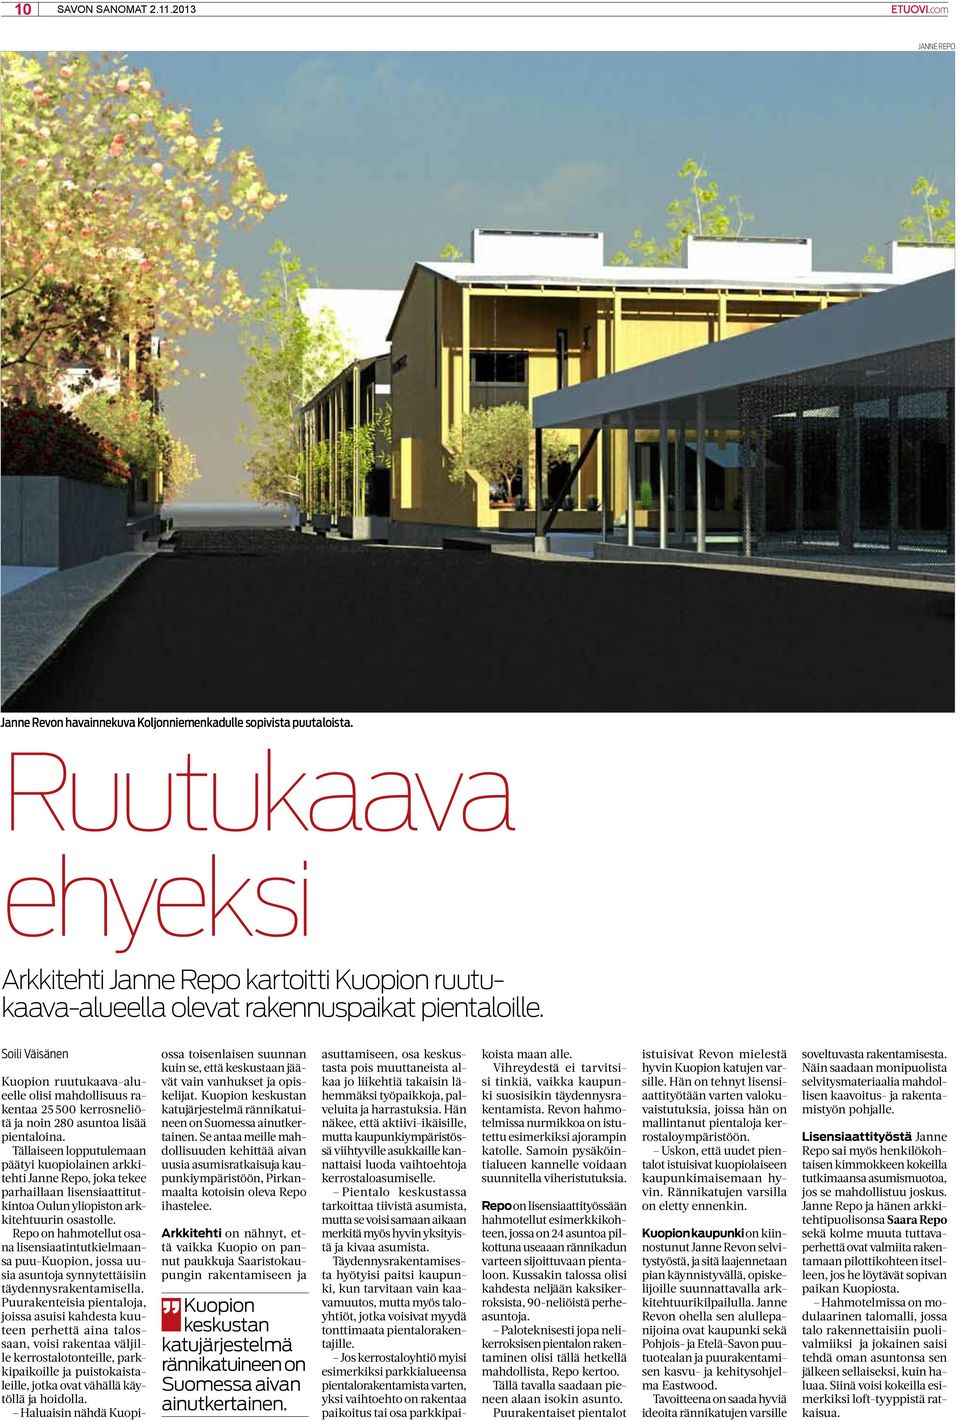 Soili Väisänen Kuopion ruutukaava-alueelle olisi mahdollisuus rakentaa 25 500 kerrosneliötä ja noin 280 asuntoa lisää pientaloina.